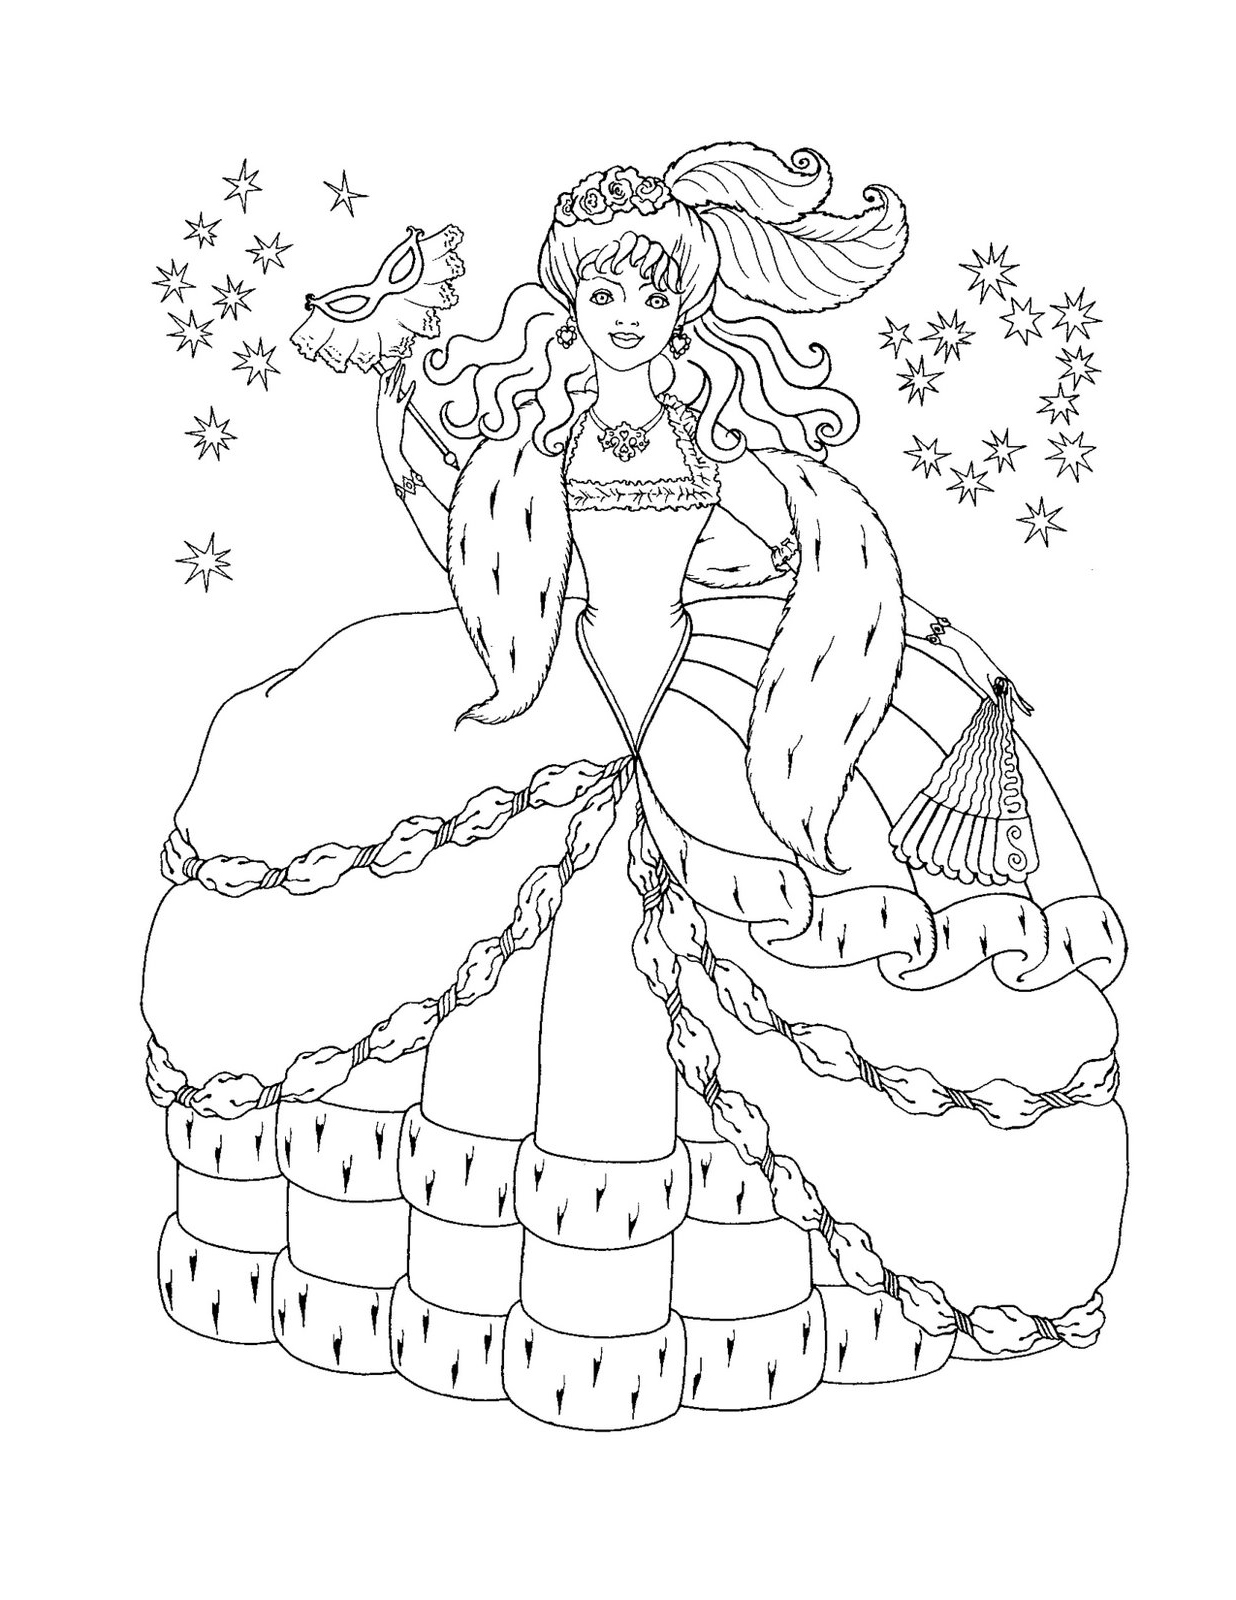 ariel princess coloring pages